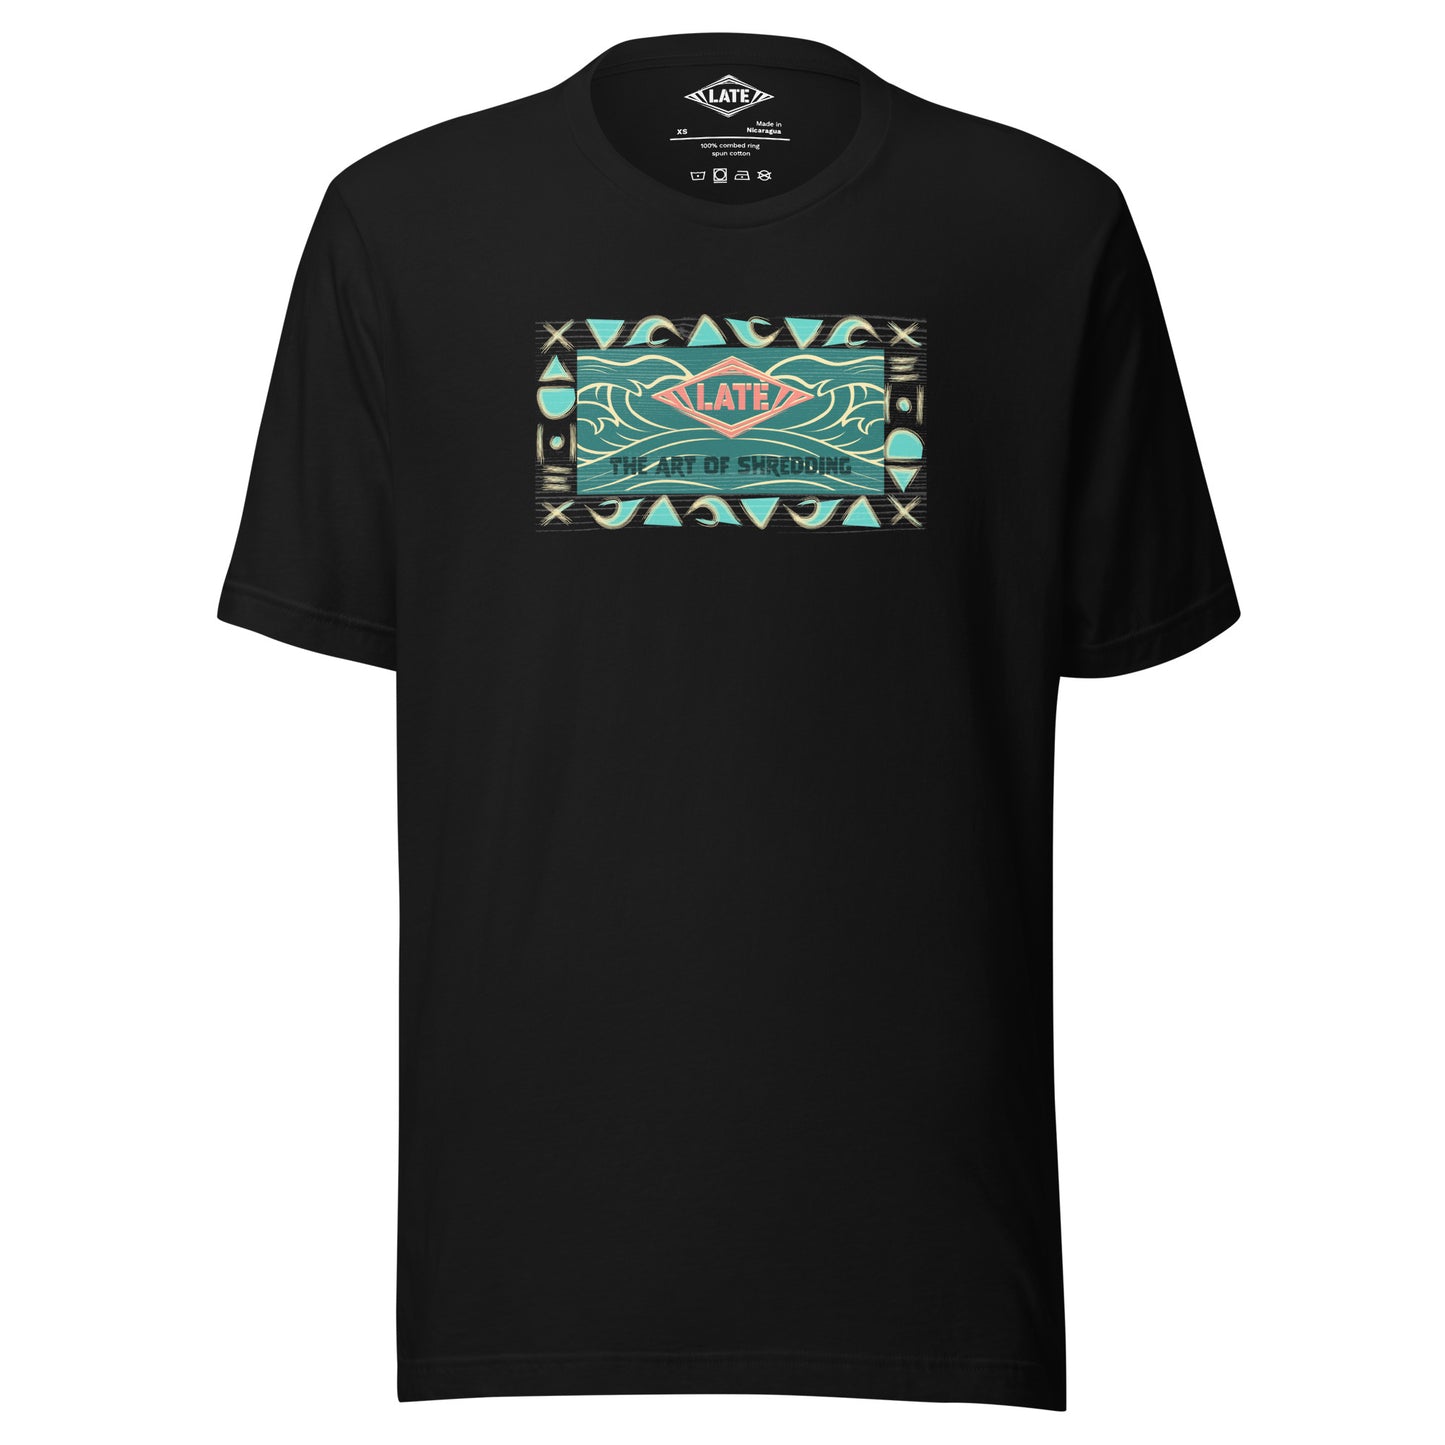 T-Shirt rétro surfwear art of shredding, logo Late surfshop motifs de vagues creuses, et dom-tom, t-shirt unisex noir